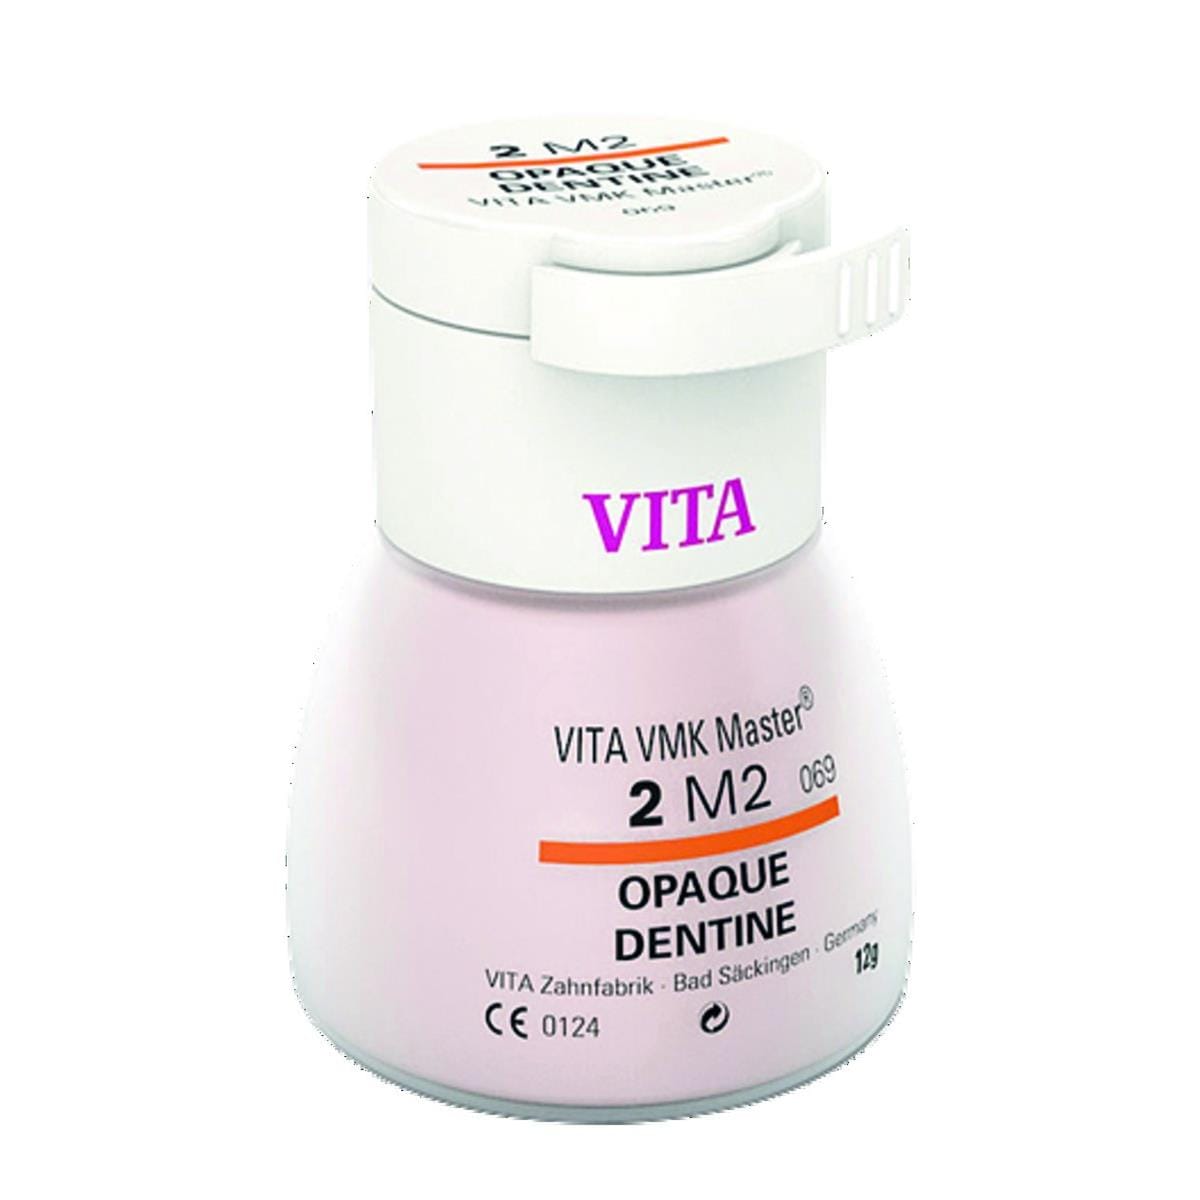 VMK Master VITA - Dentine Opaque - 3L1,5 - Le flacon de 12 g